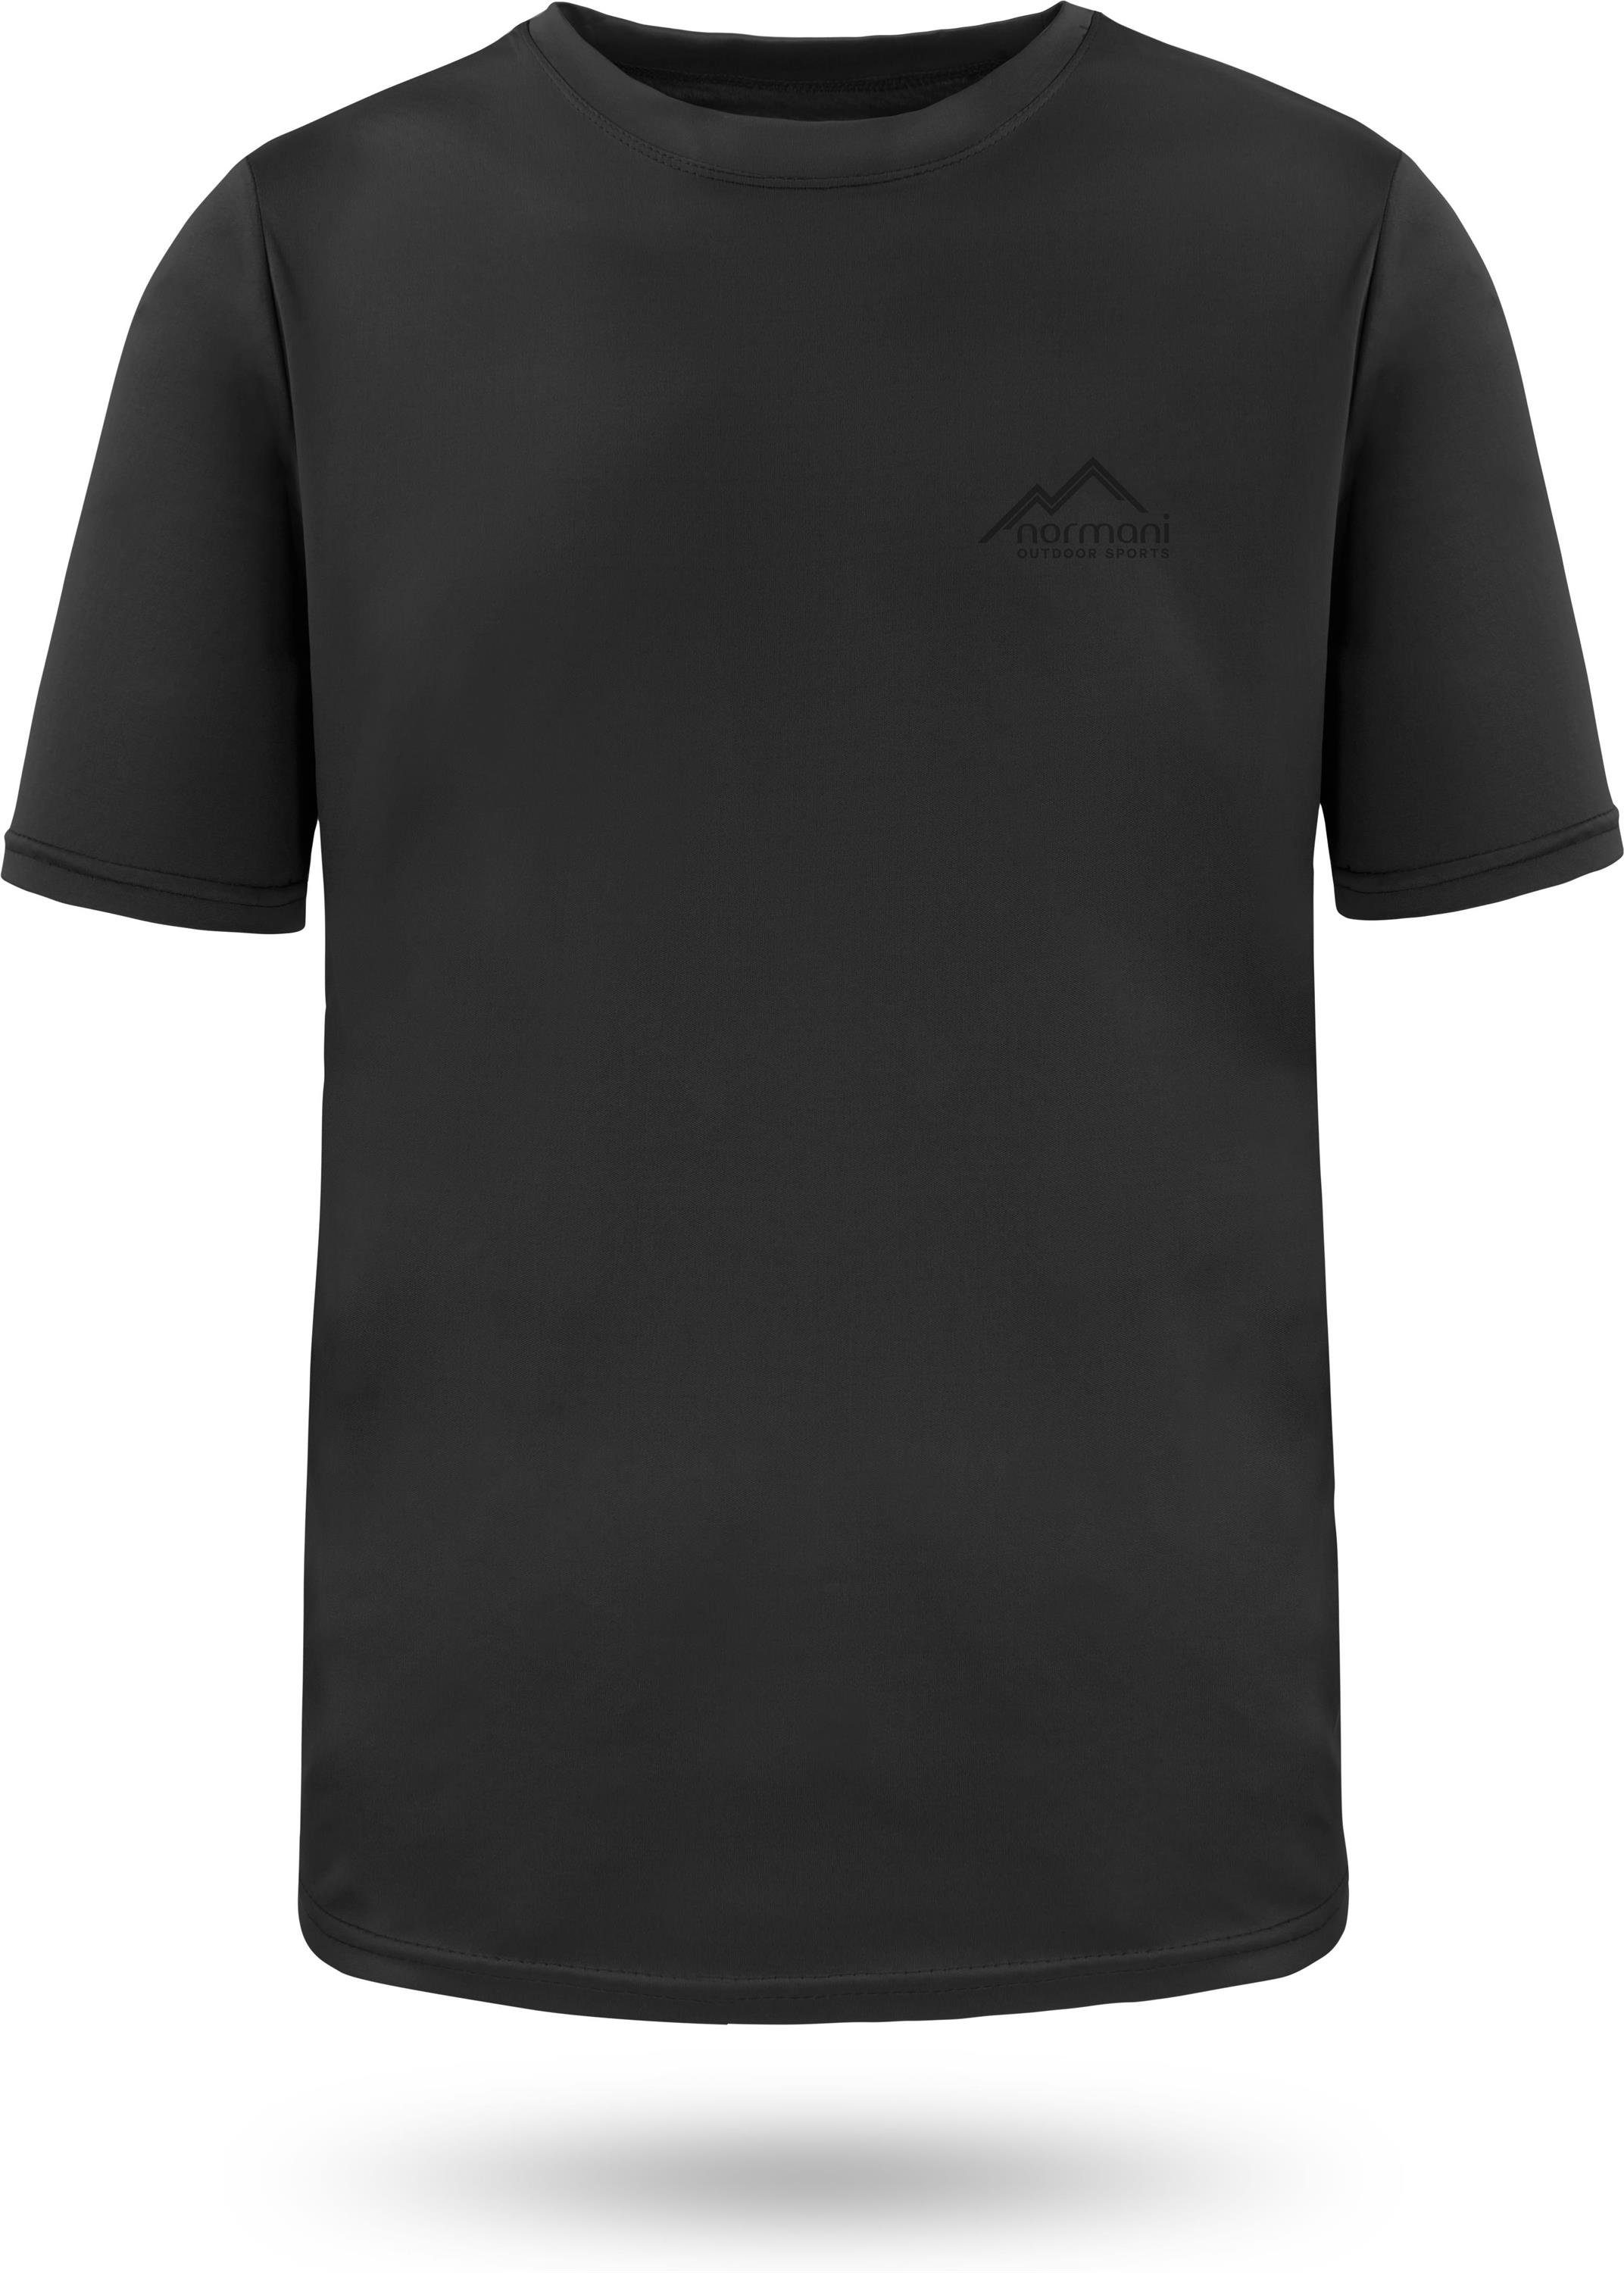 Shirt Cooling-Material T-Shirt normani Herren Kurzarm Fitness Funktionsshirt Funktions-Sport Schwarz mt Sportswear Agra